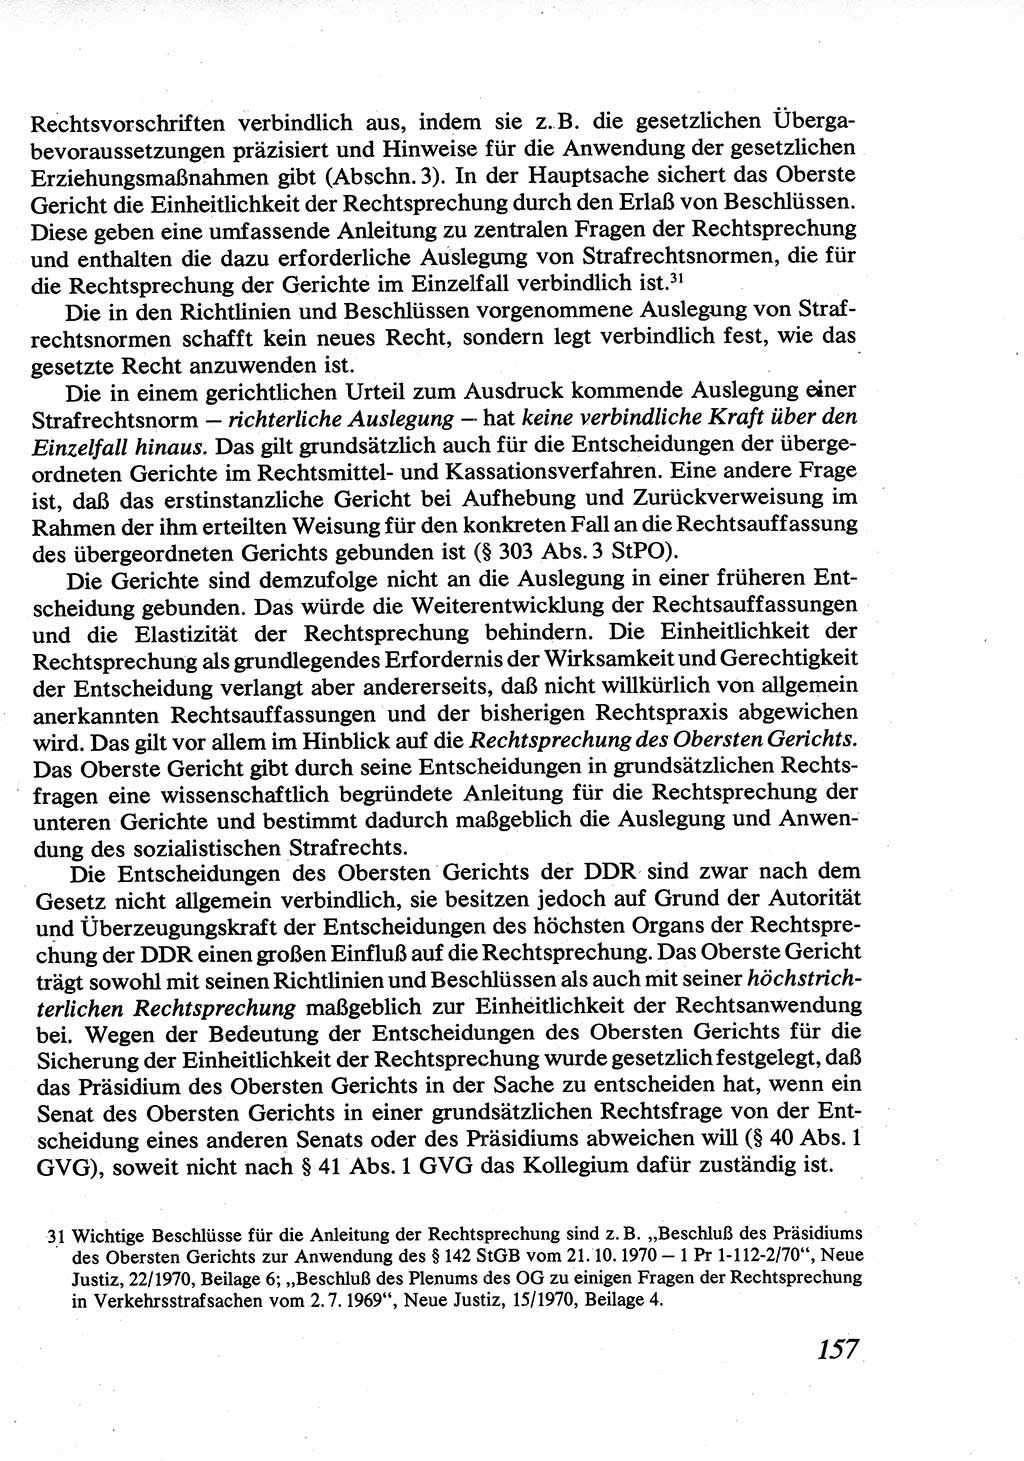 Strafrecht [Deutsche Demokratische Republik (DDR)], Allgemeiner Teil, Lehrbuch 1976, Seite 157 (Strafr. DDR AT Lb. 1976, S. 157)